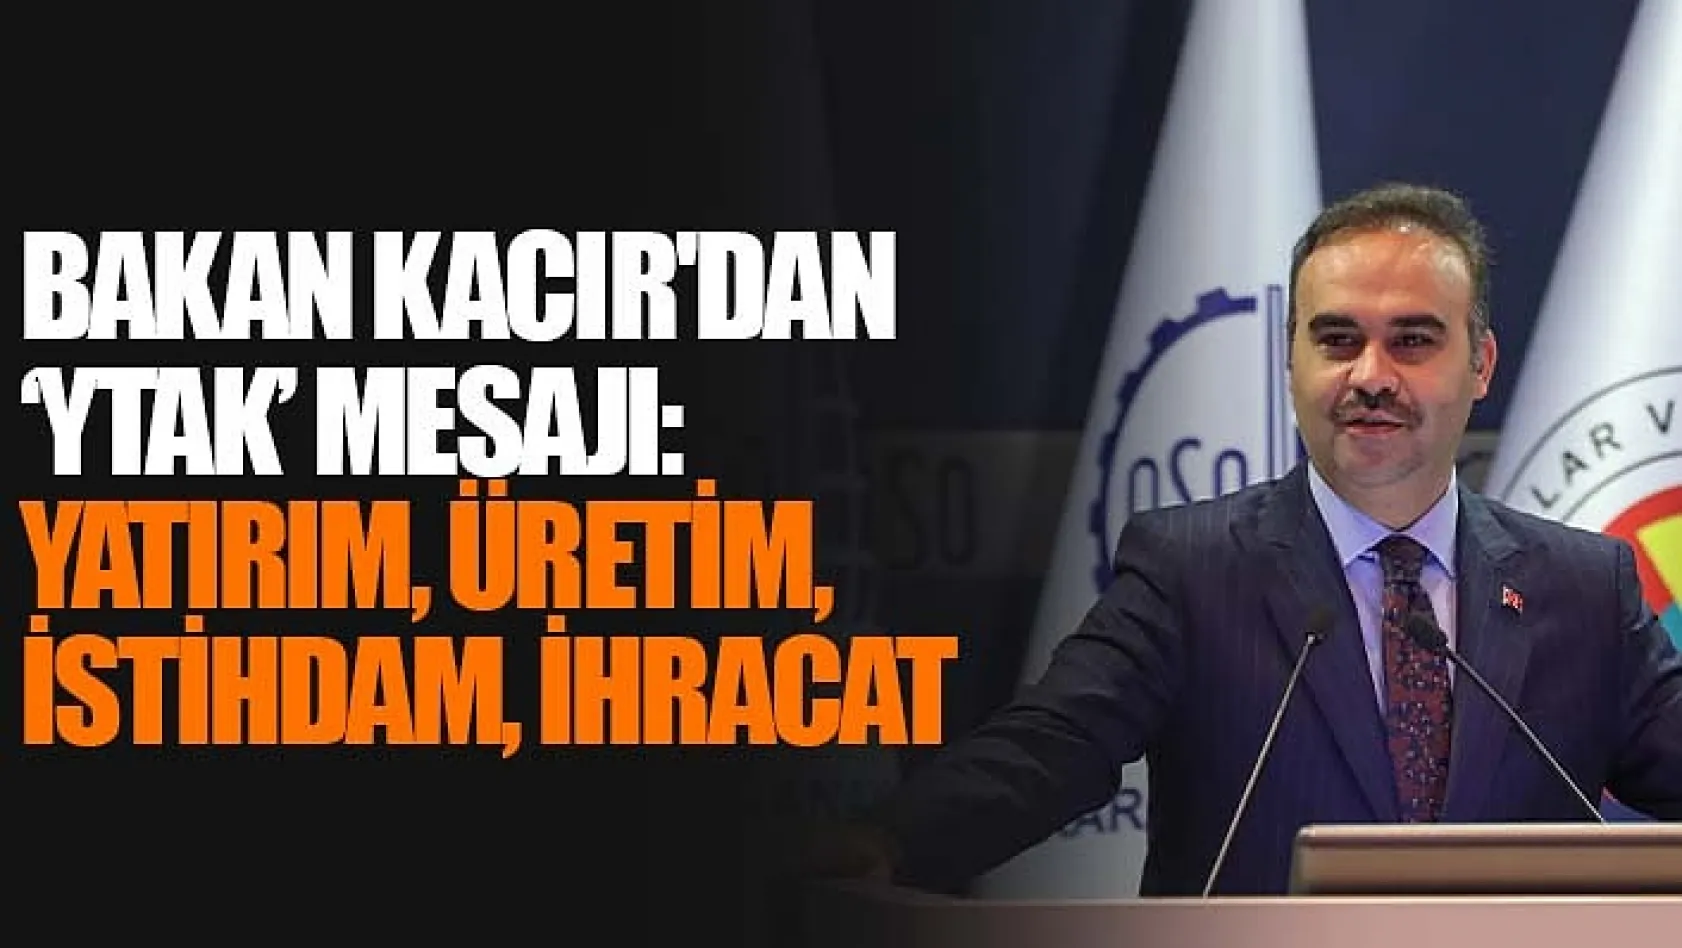 Bakan Kacır'dan 'YTAK' Mesajı: 'Yatırım, Üretim, İstihdam, İhracat'